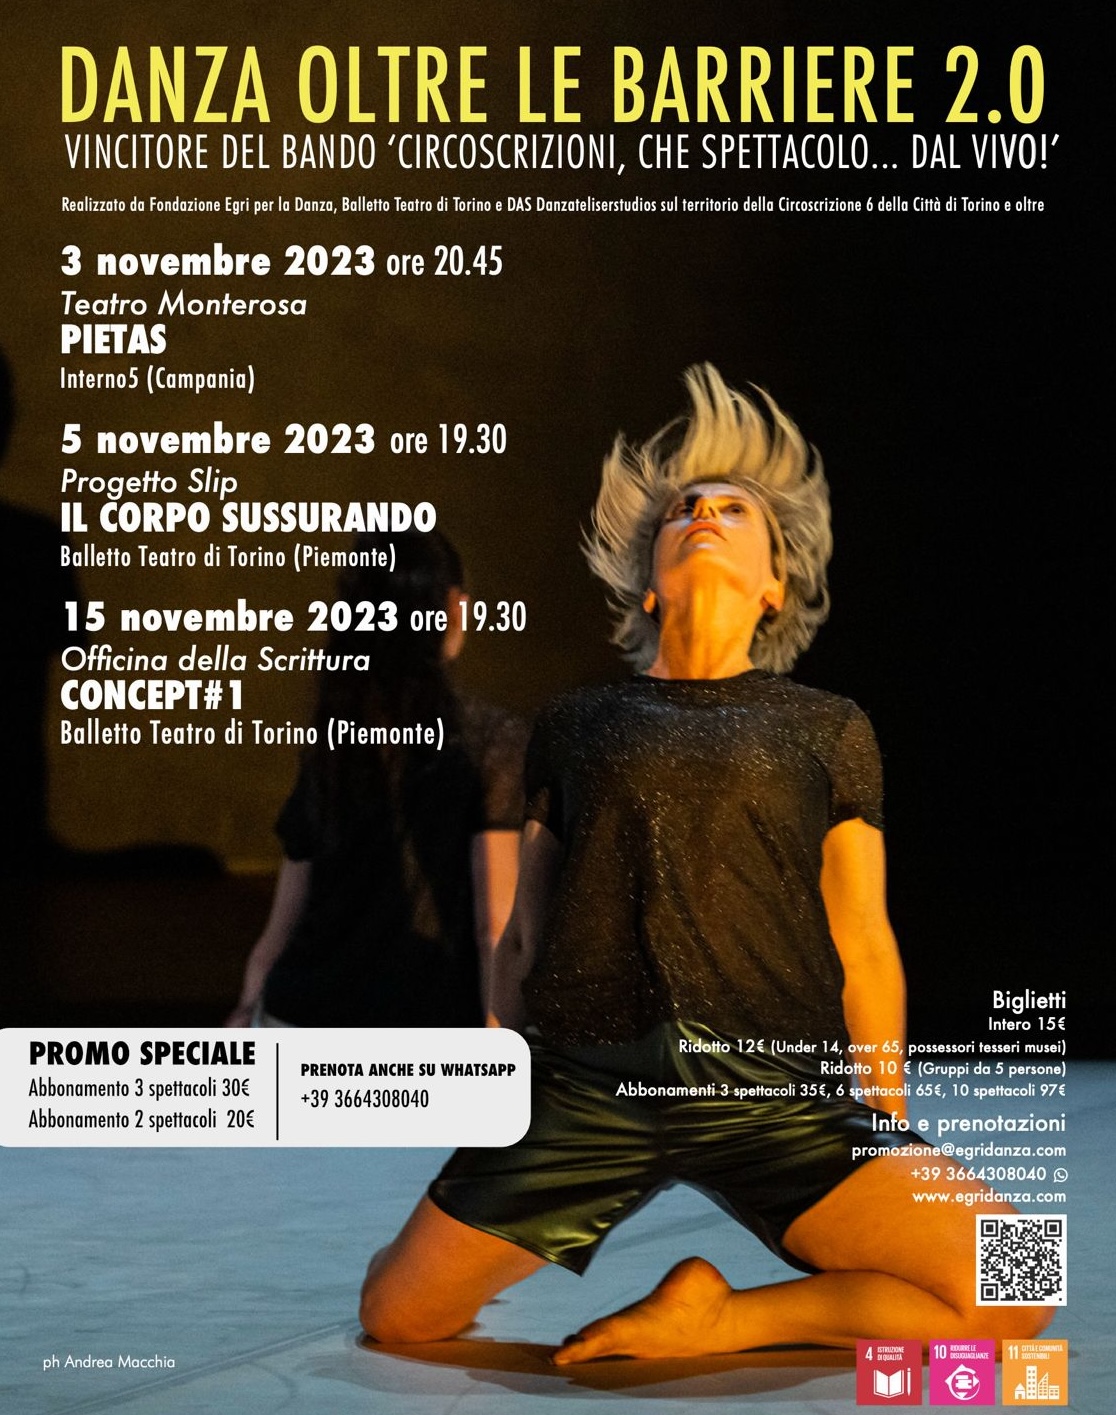 Spettacolo di danza: Concept#1 | Balletto Teatro di Torino